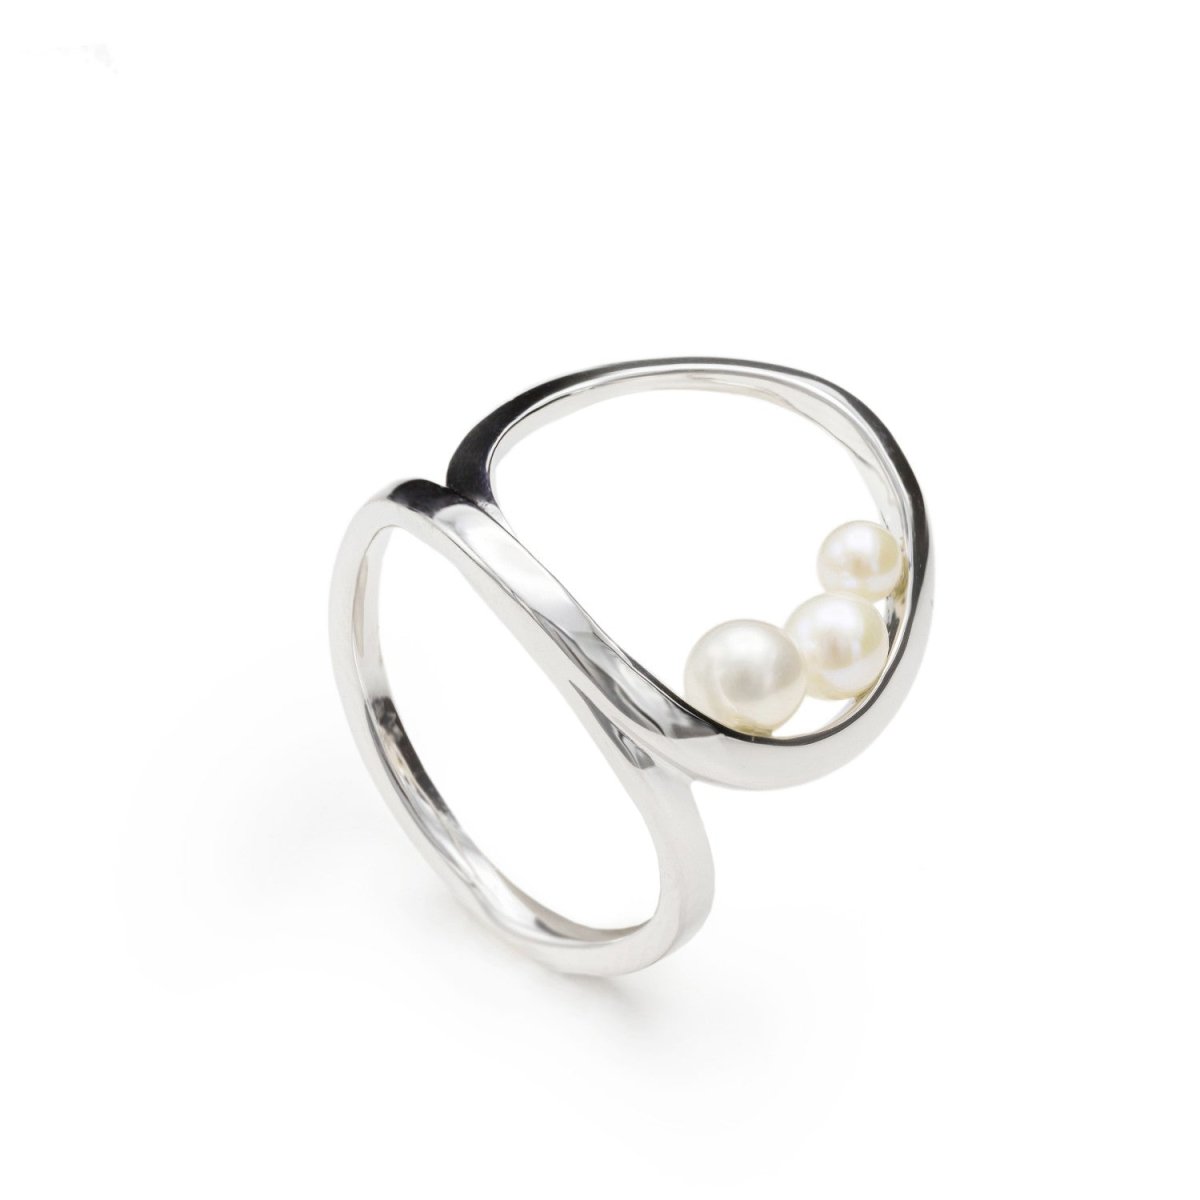 Anillo · Anillos con perlas de plata diseño circular entrelazado